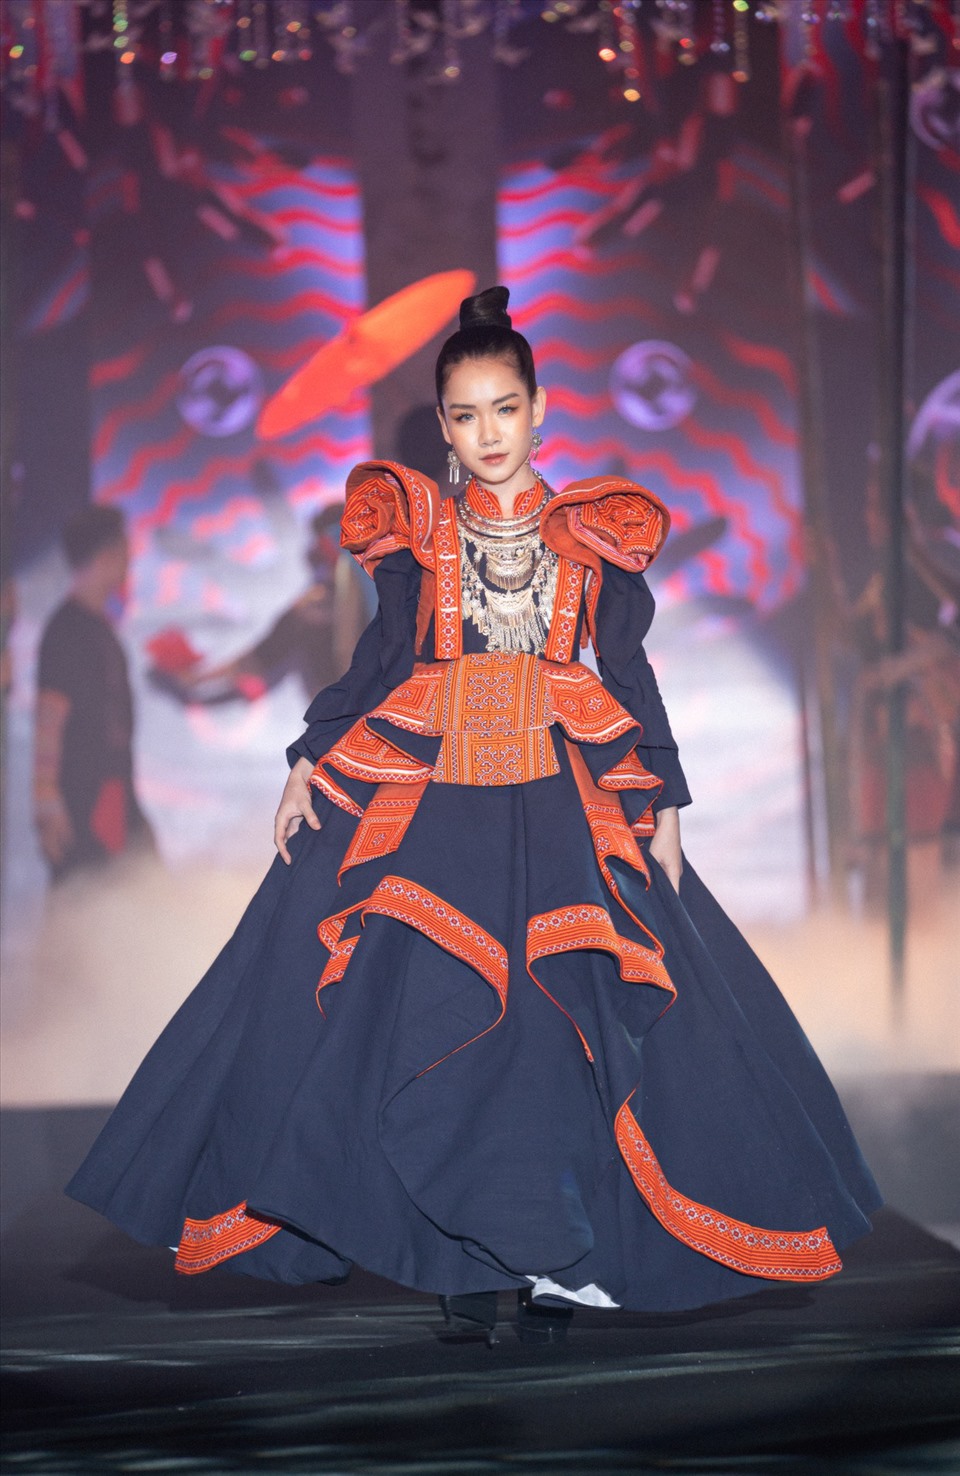 VIFT chú trọng vào việc quảng bá văn hóa, du lịch Việt Nam thông qua những chương trình biểu diễn thời trang. Ảnh: BTC